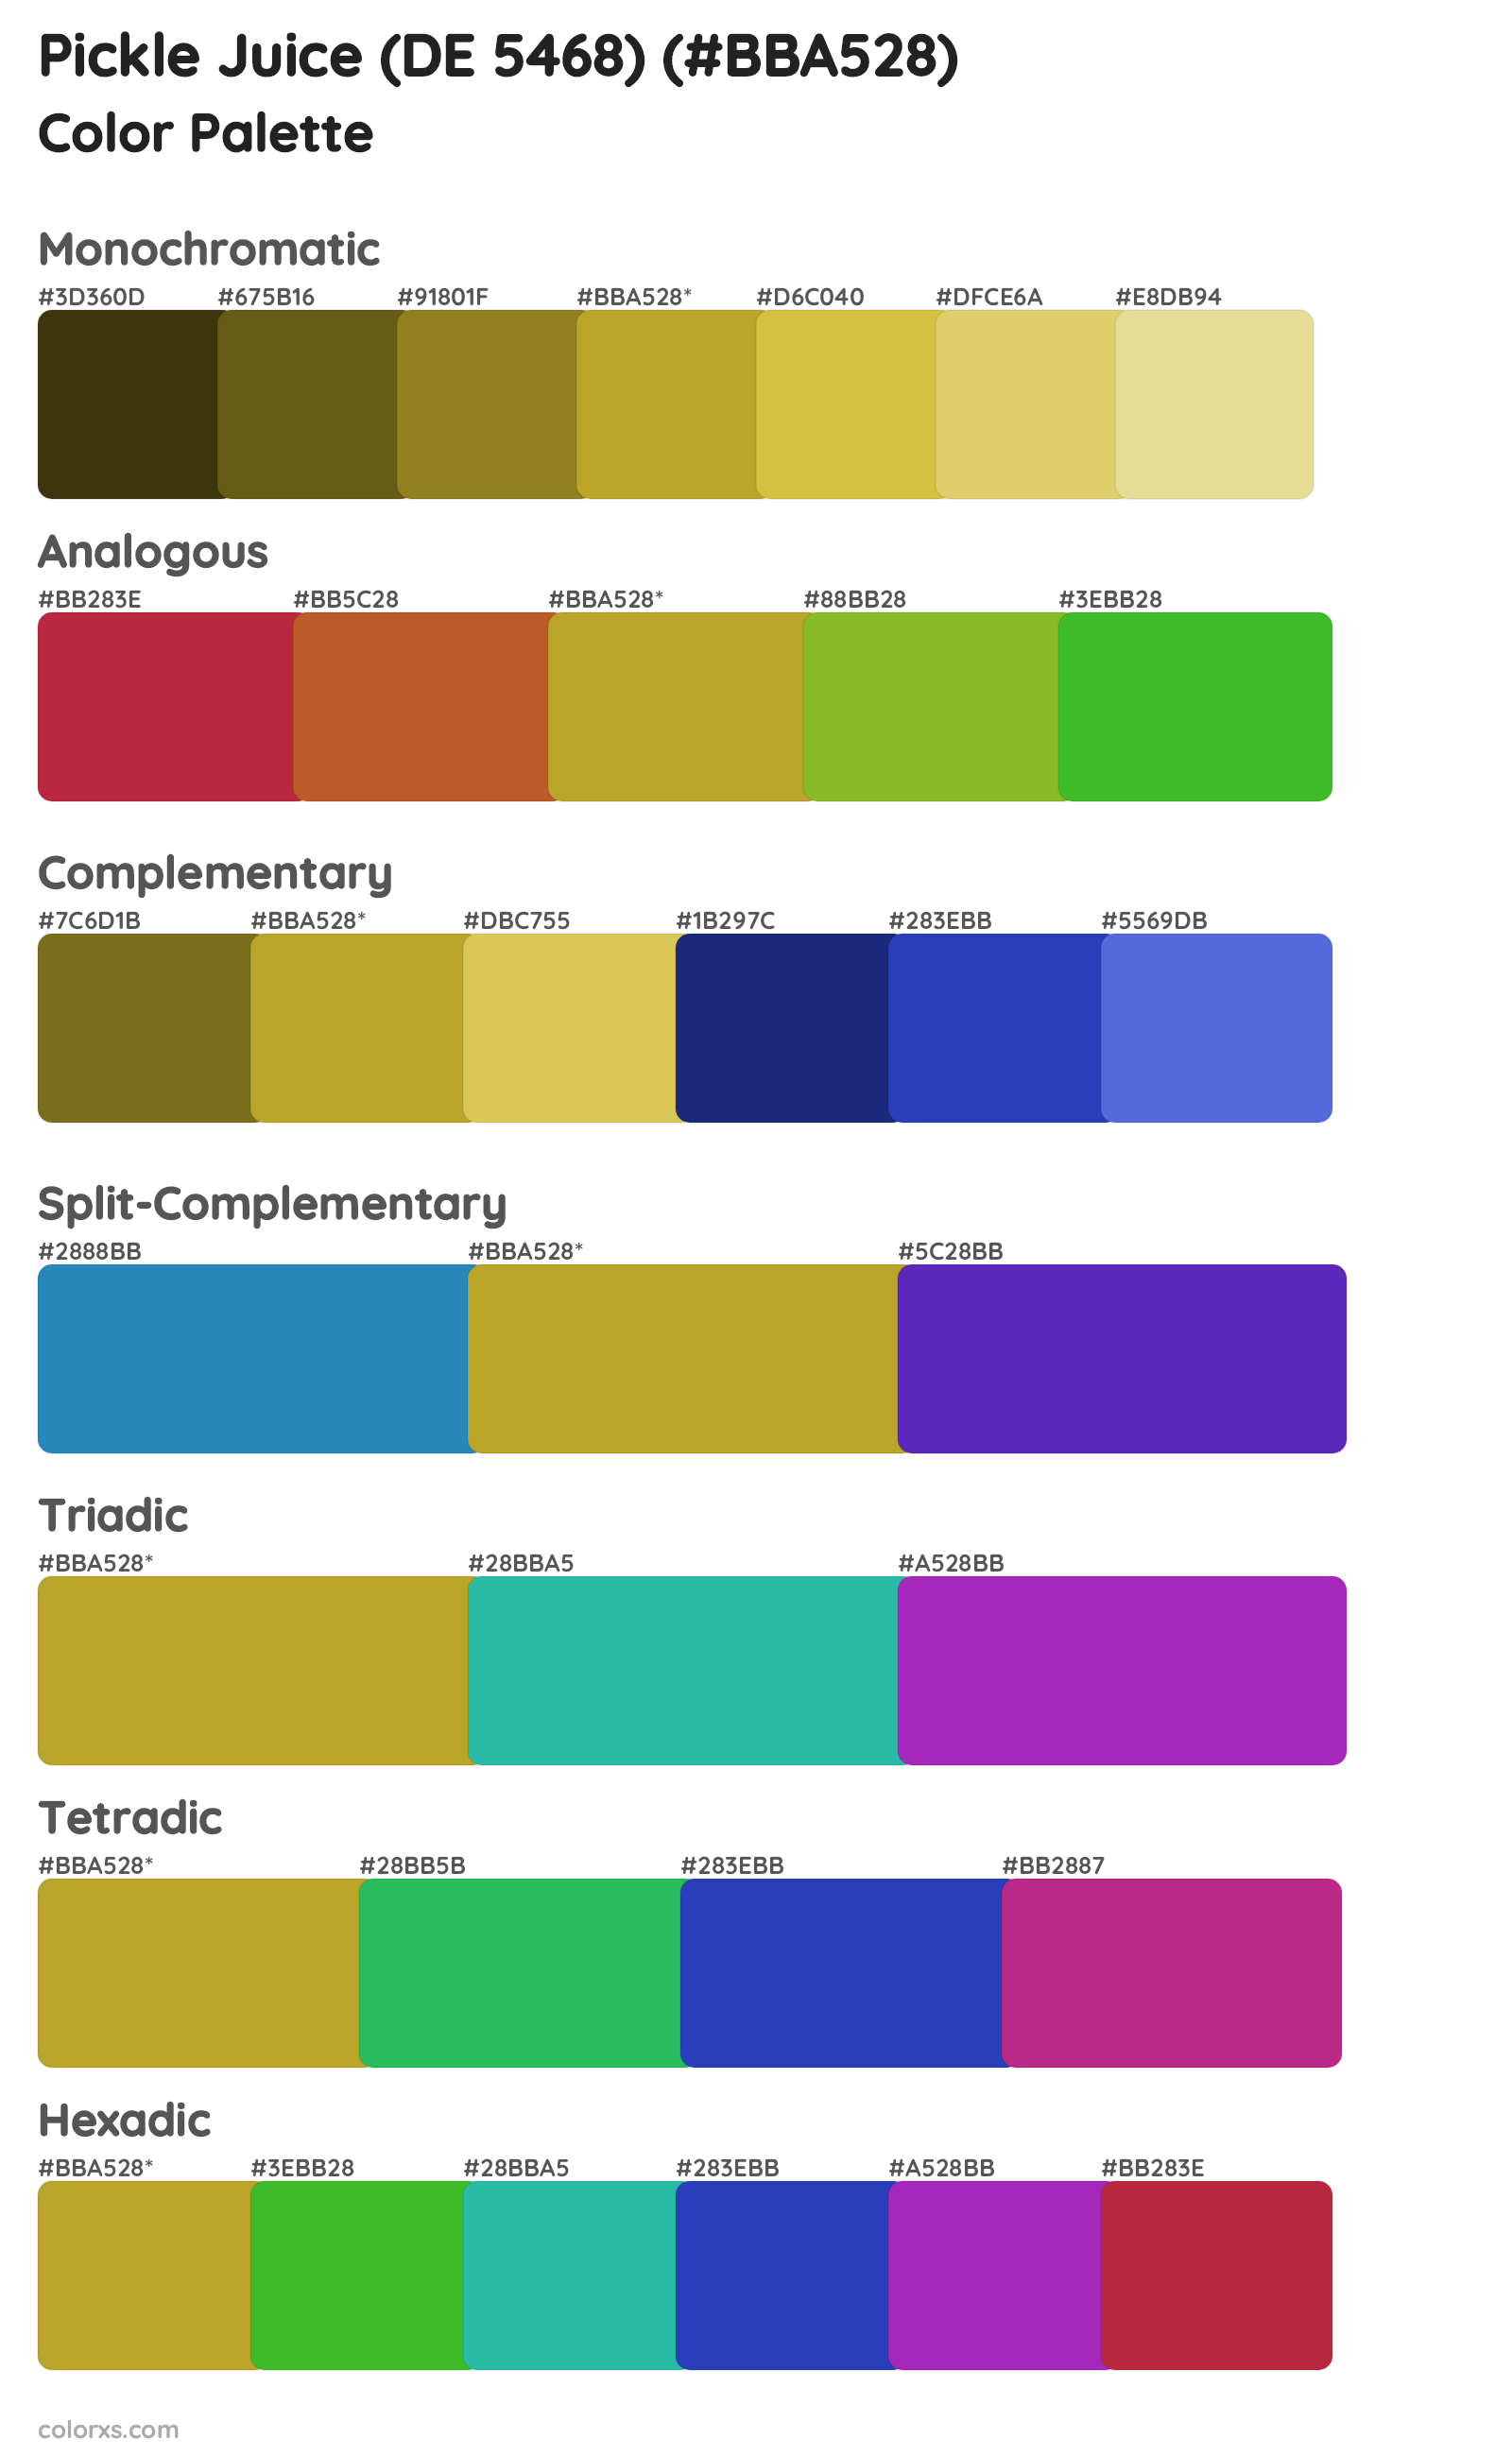 Pickle Juice (DE 5468) Color Scheme Palettes